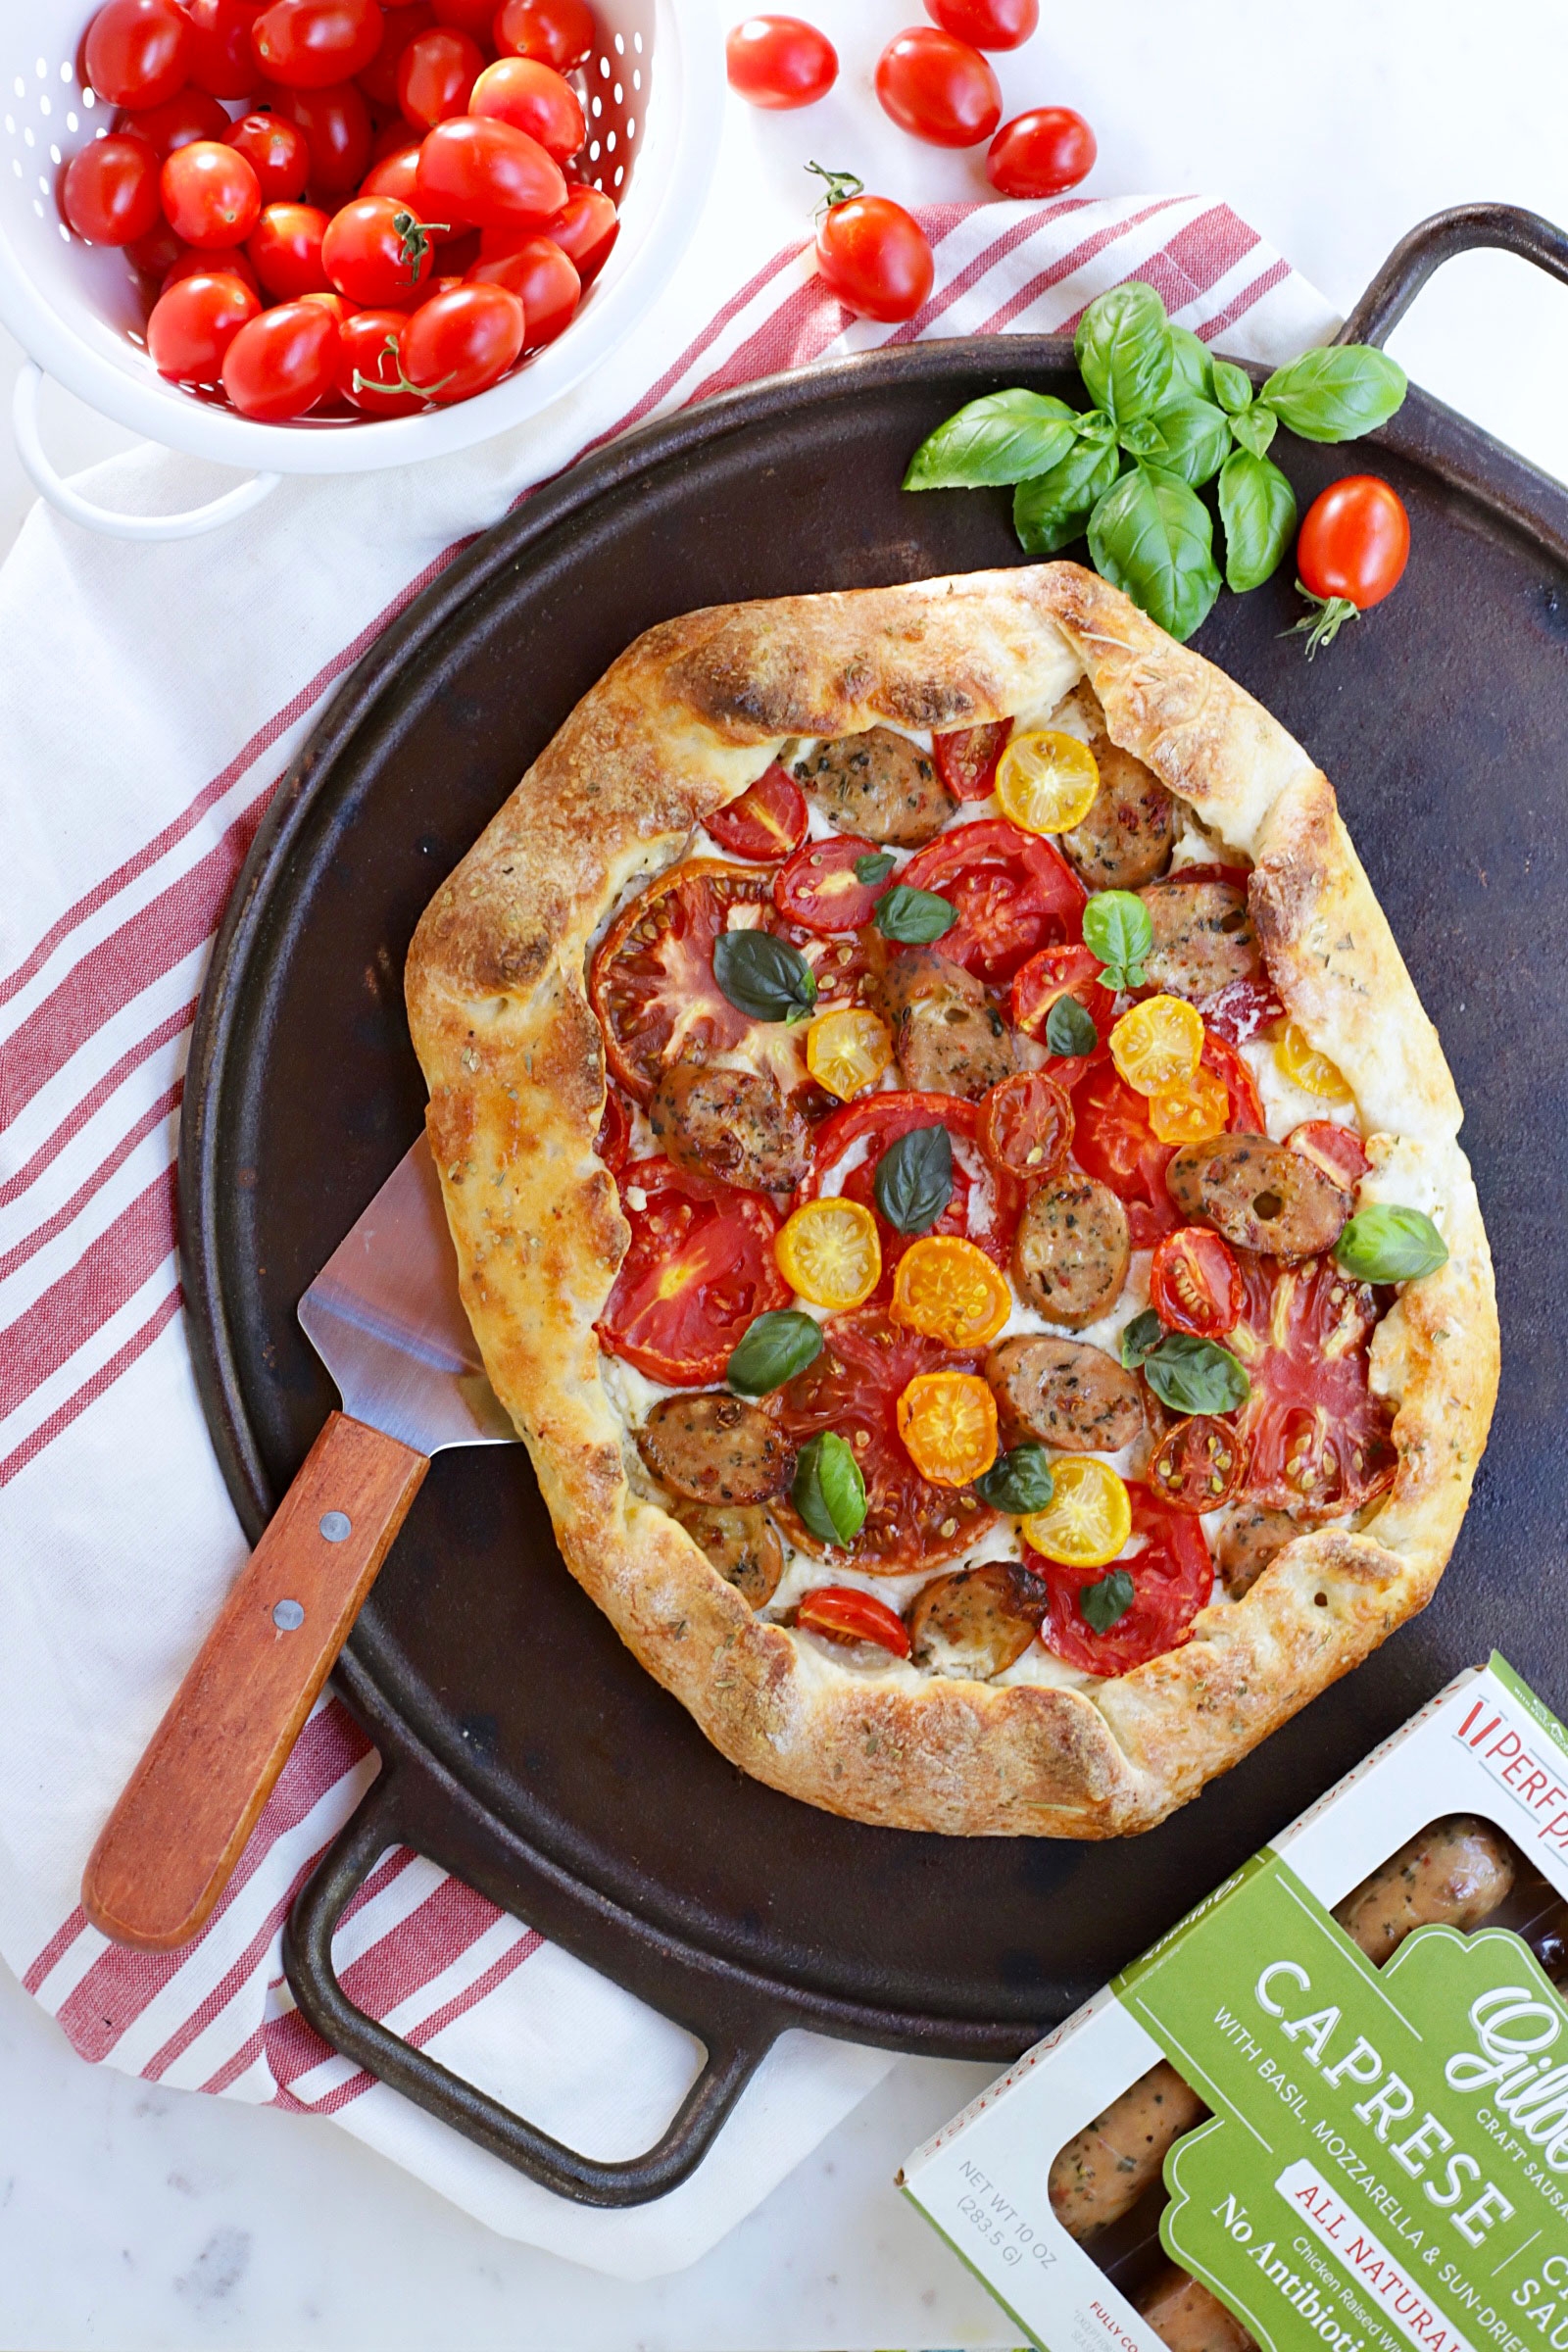 Rustic Tomato & Sausage Pizza recipe image